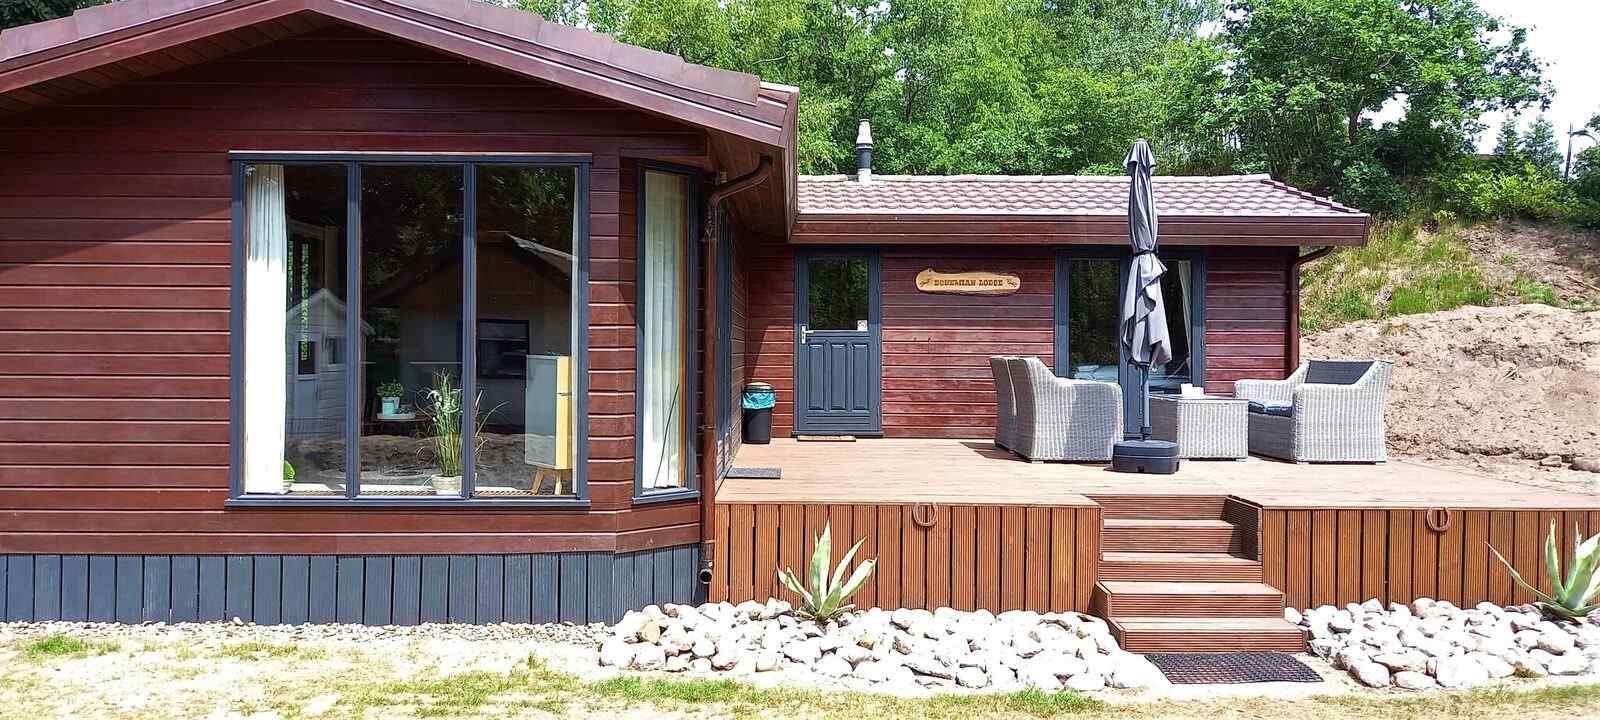 Luxe 4 persoons vakantiehuis in Wilsum nabij de grens Duitsland-Nederland - Duitsland - Europa - Wilsum